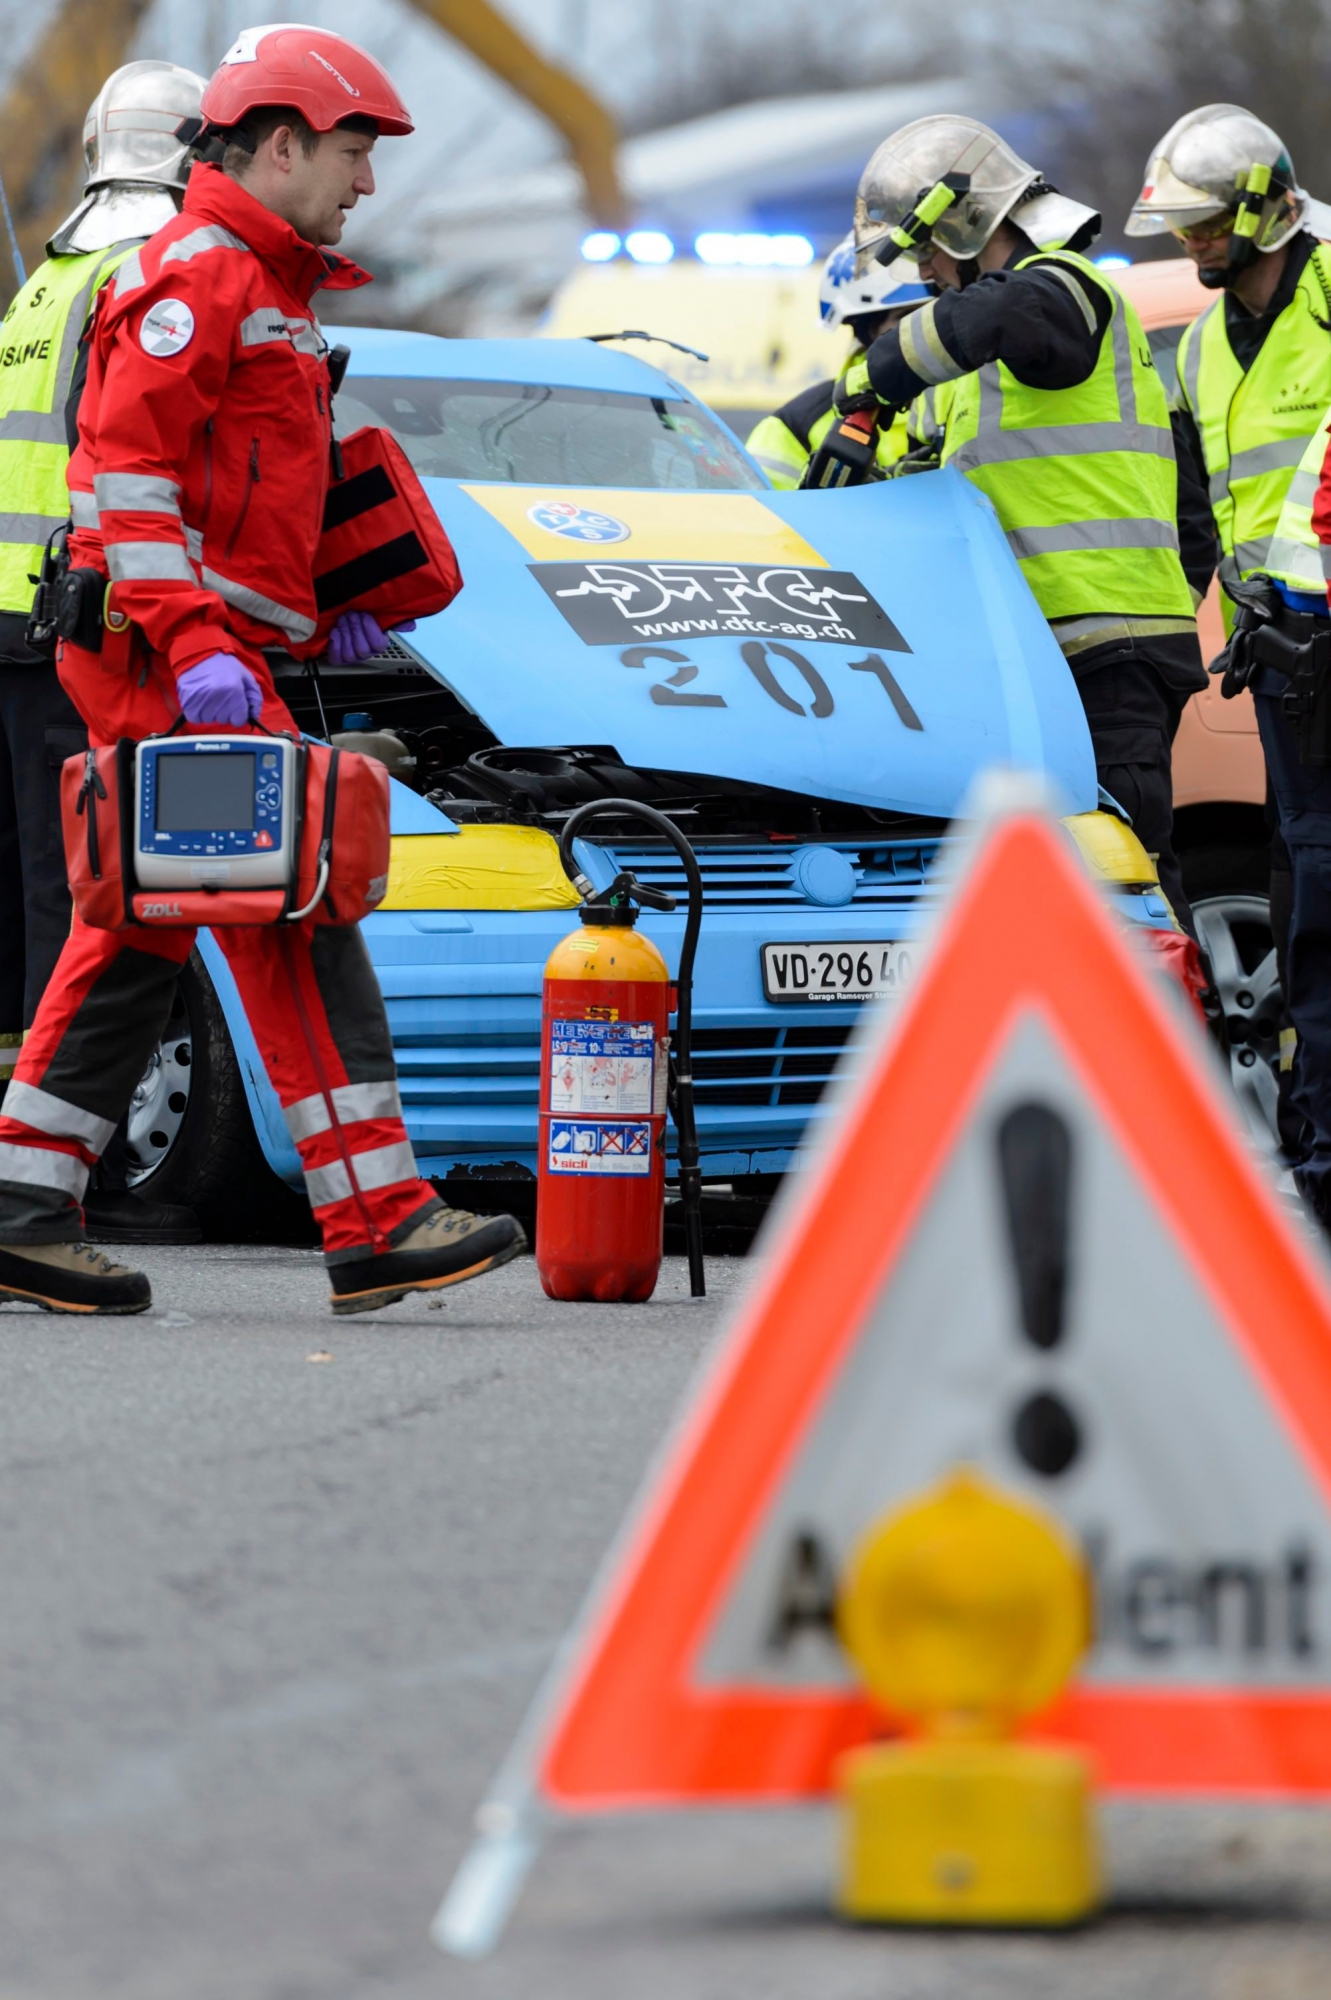 Des secouristes, policiers, ambulanciers, pompiers, rega, effectuent les premiers secours sur des blesses fictifs lors d'un crash test "la bonne conduite" simulant un accident entre deux voiture, ce mercredi, 25 mars 2015, au Mont-sur-Lausanne. Dans le cadre de la campagne de prevention routiere "la bonne conduite", et pour la premiere fois en Suisse, la Police cantonale vaudoise, le Touring Club Suisse (TCS), le Service des automobiles et de la navigation, le Service mobile d'urgence et de reanimation, la Direction generale de la mobilite et des routes, la Rega, ainsi que le Service de Protection et Sauvetage Lausanne, simulent un accident entre deux voitures en situation reel. Le but de la demonstration est d'estimer les couts reels, directs et indirects, díun accident de circulation. (KEYSTONE/Laurent Gillieron) SCHWEIZ VERKEHR SICHERHEIT CRASHTEST